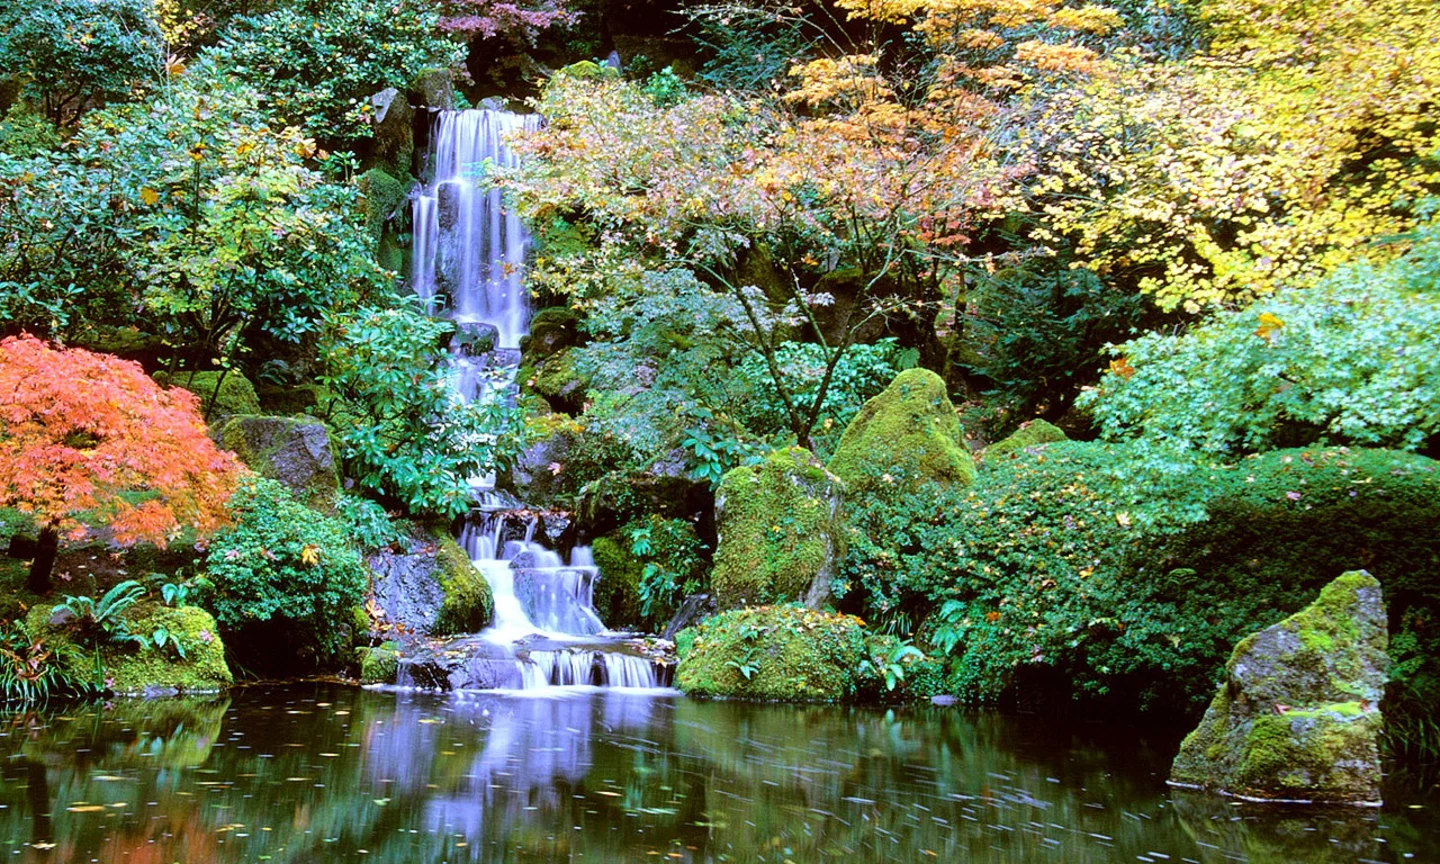 A photo of the Portland Japanese Garden.